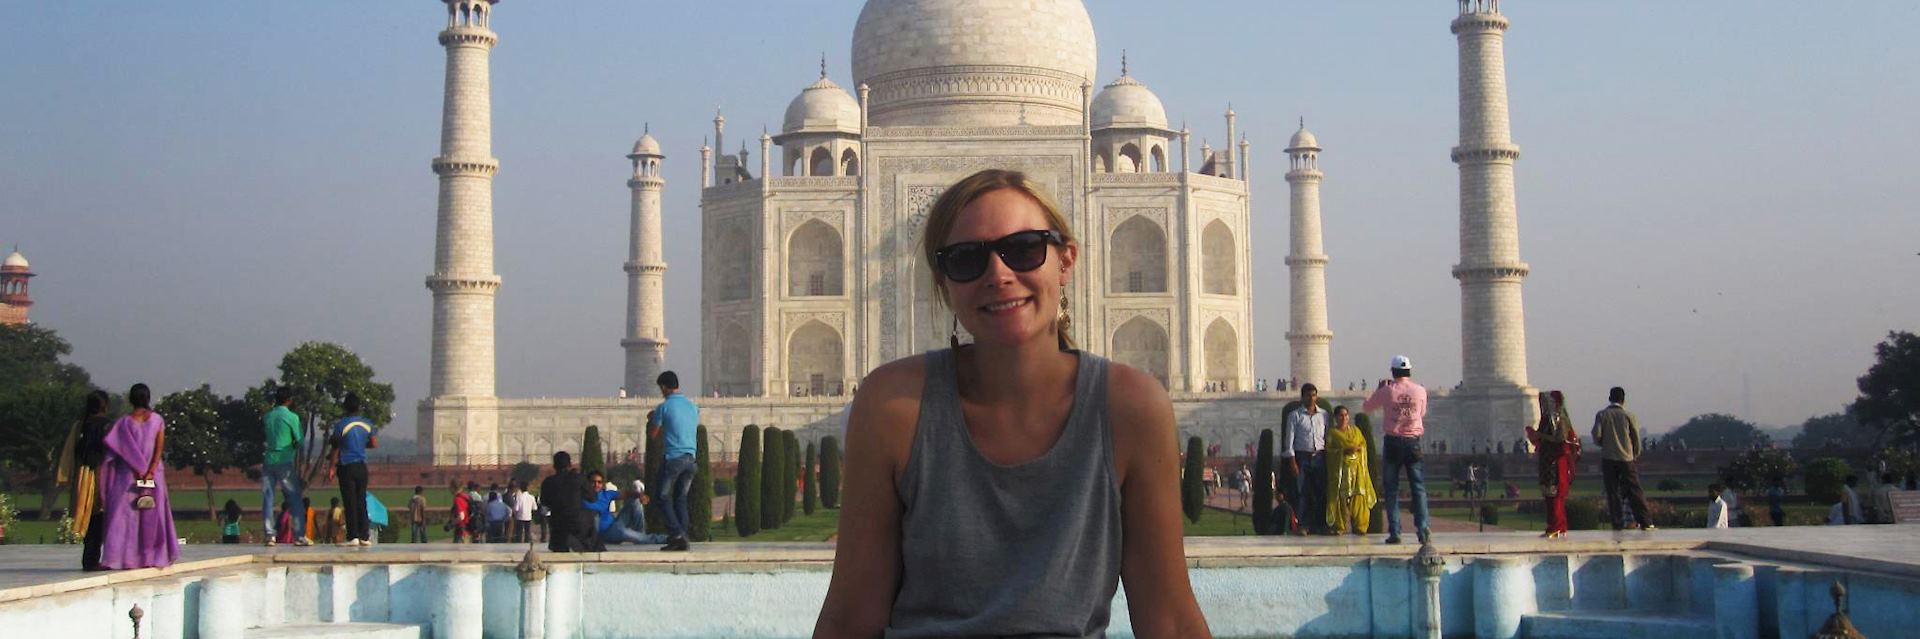 louisa visiting the Taj Mahal, Agra, India